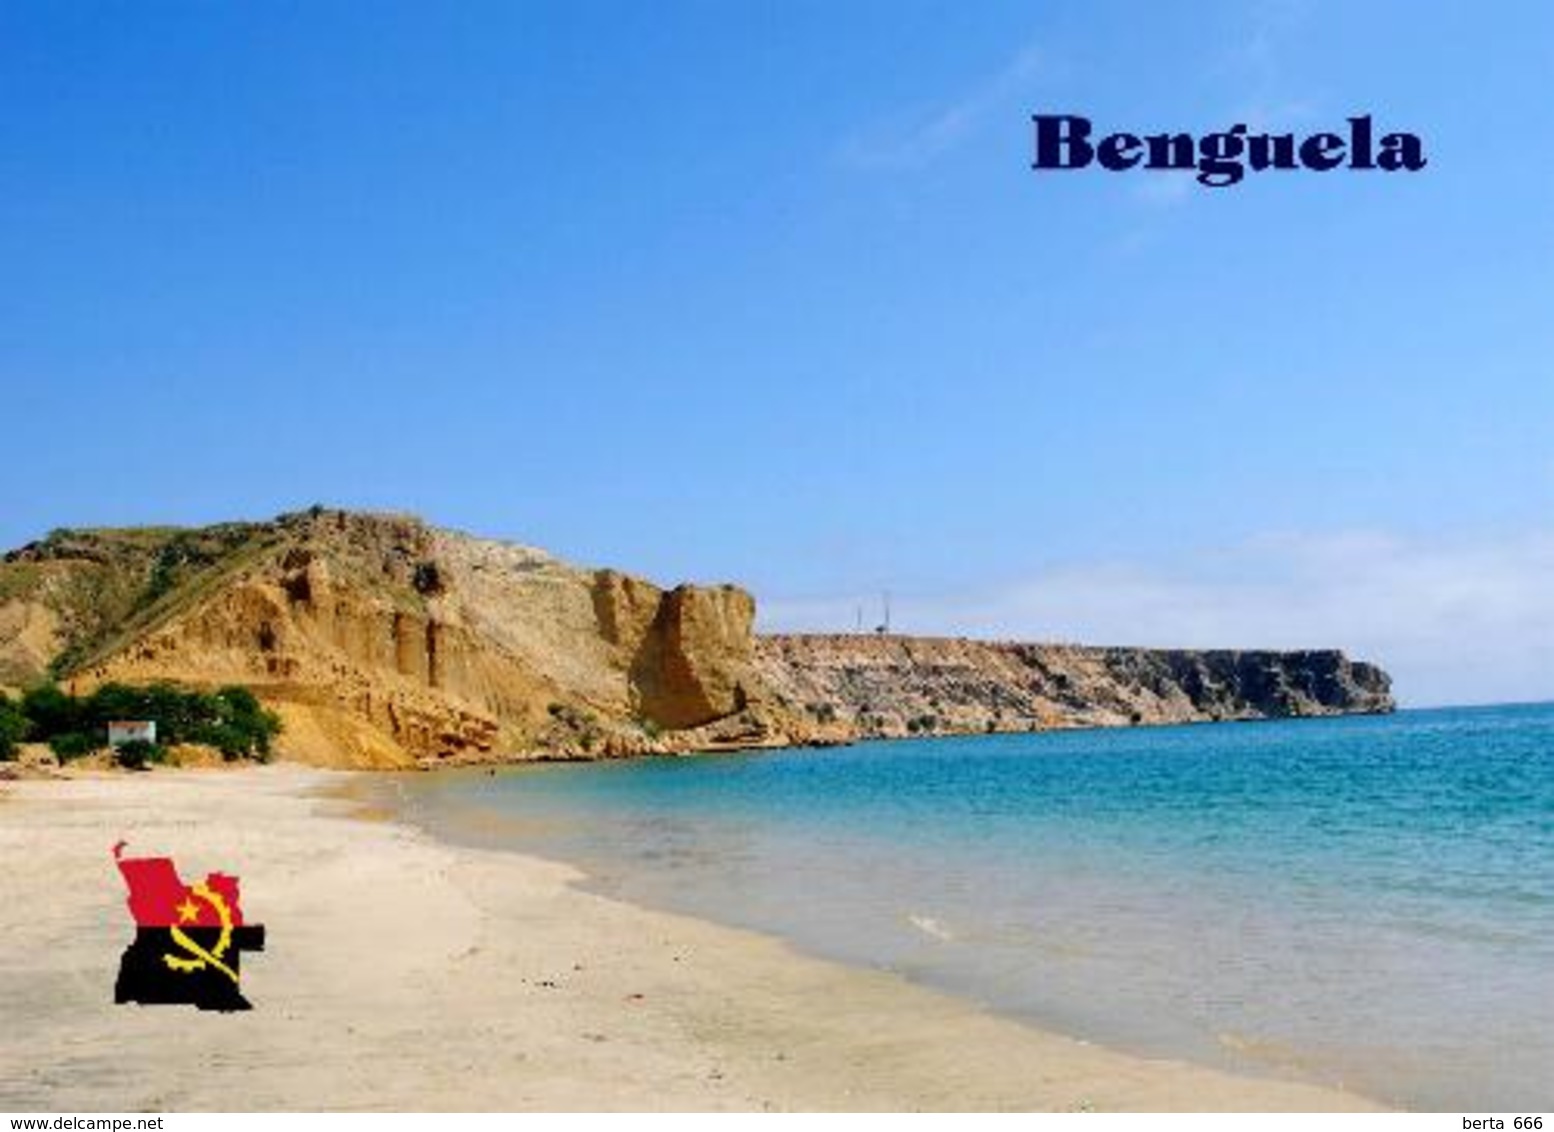 Angola Benguela Blue Bay New Postcard - Angola